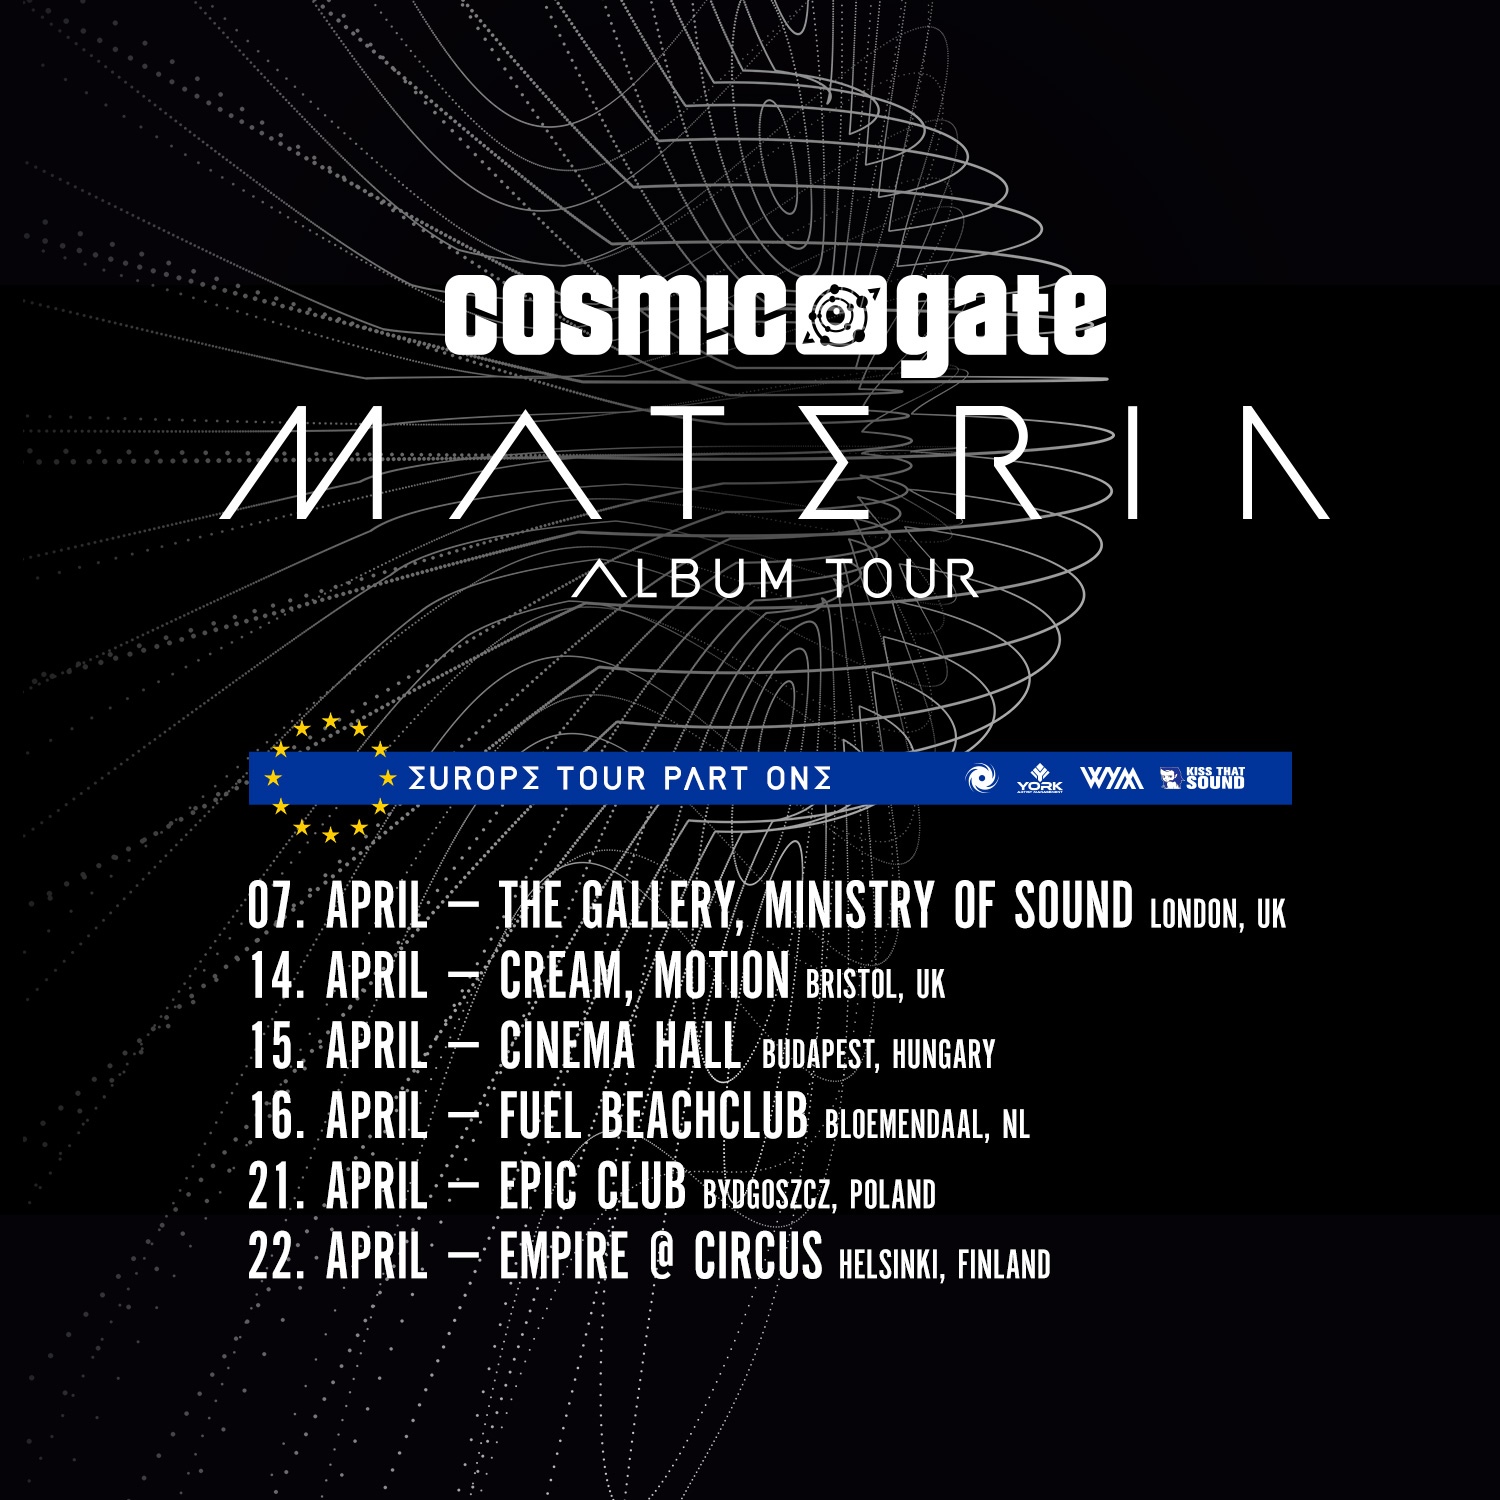 Cosmic Gate’s European Materia Tour